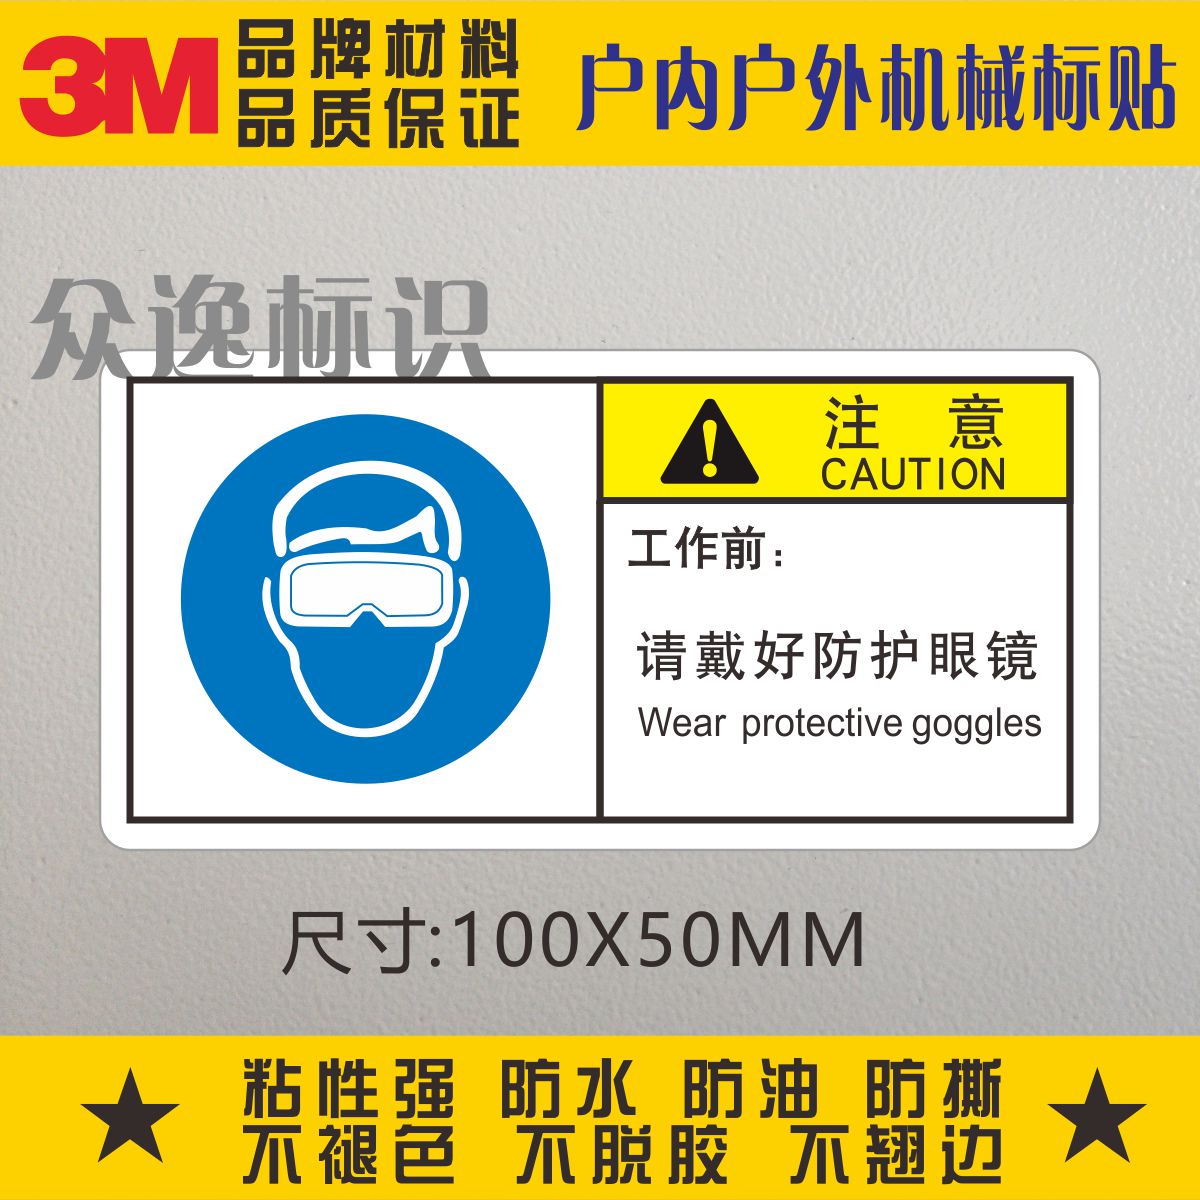 工作前请戴好防护眼镜3M警示标志设备贴纸中英文安全警告标识标贴